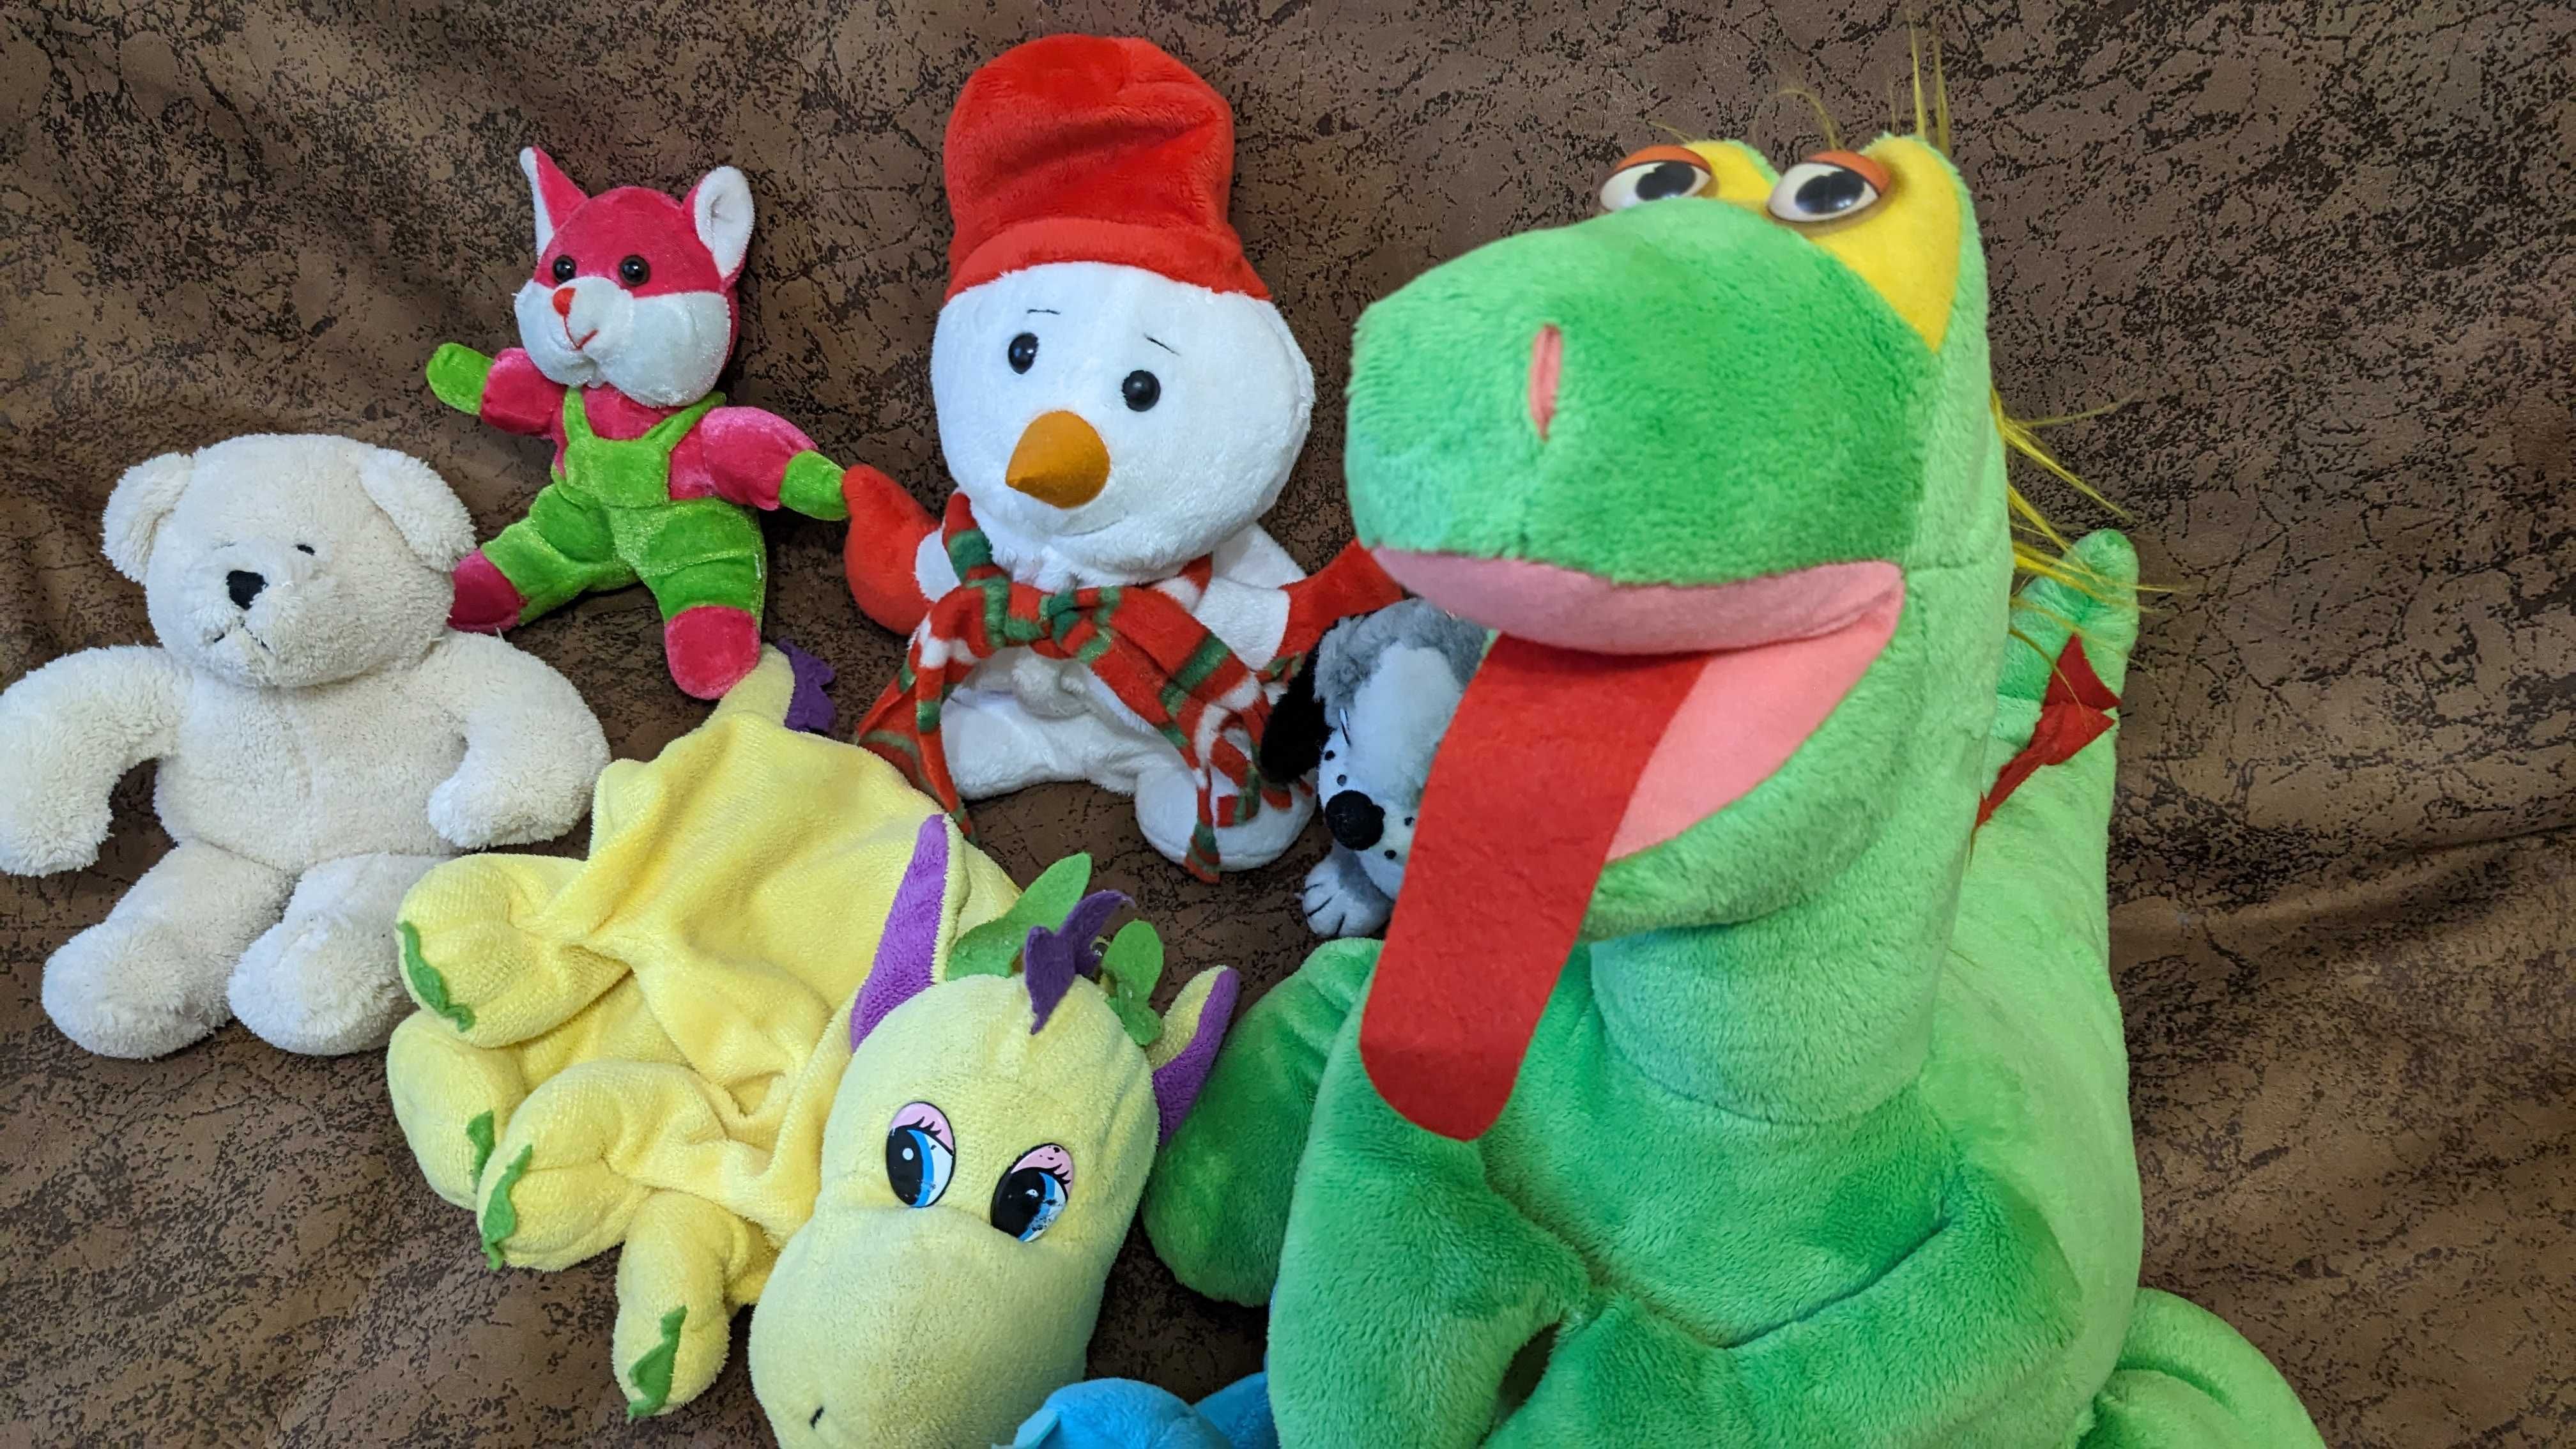 Мякі іграшки, зелений дракон, сніговик іграшка, білий ведмідь іграшка